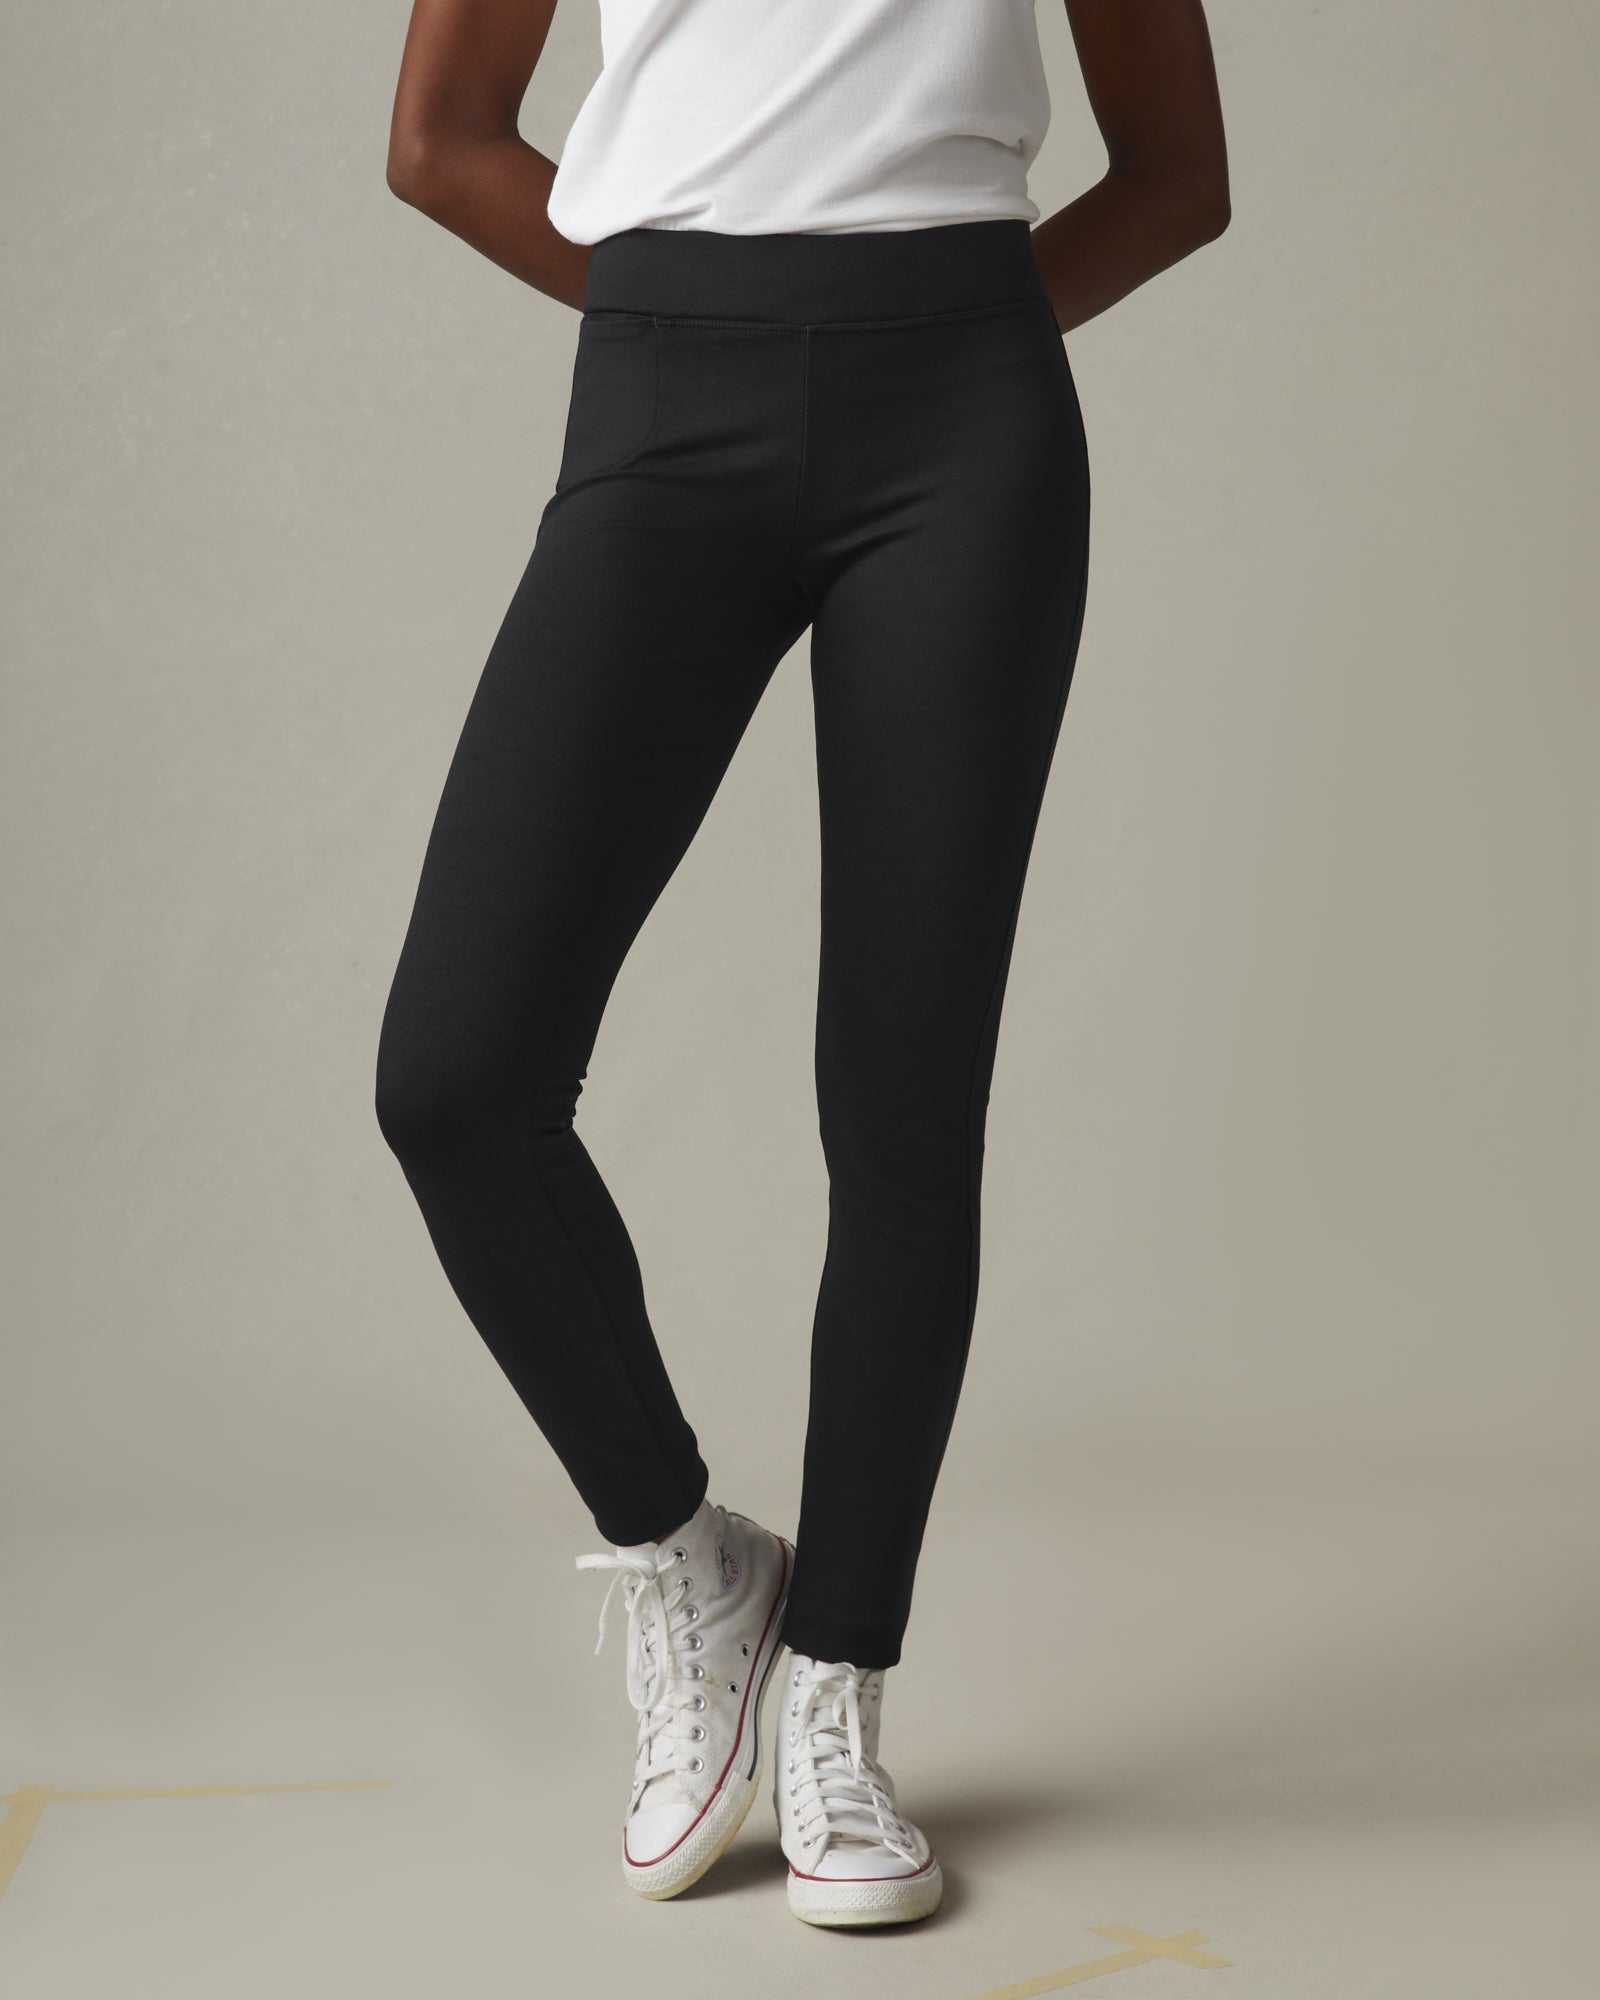 20 Best Black Leggings to Shop 2020 — Black Leggings for Women-anthinhphatland.vn